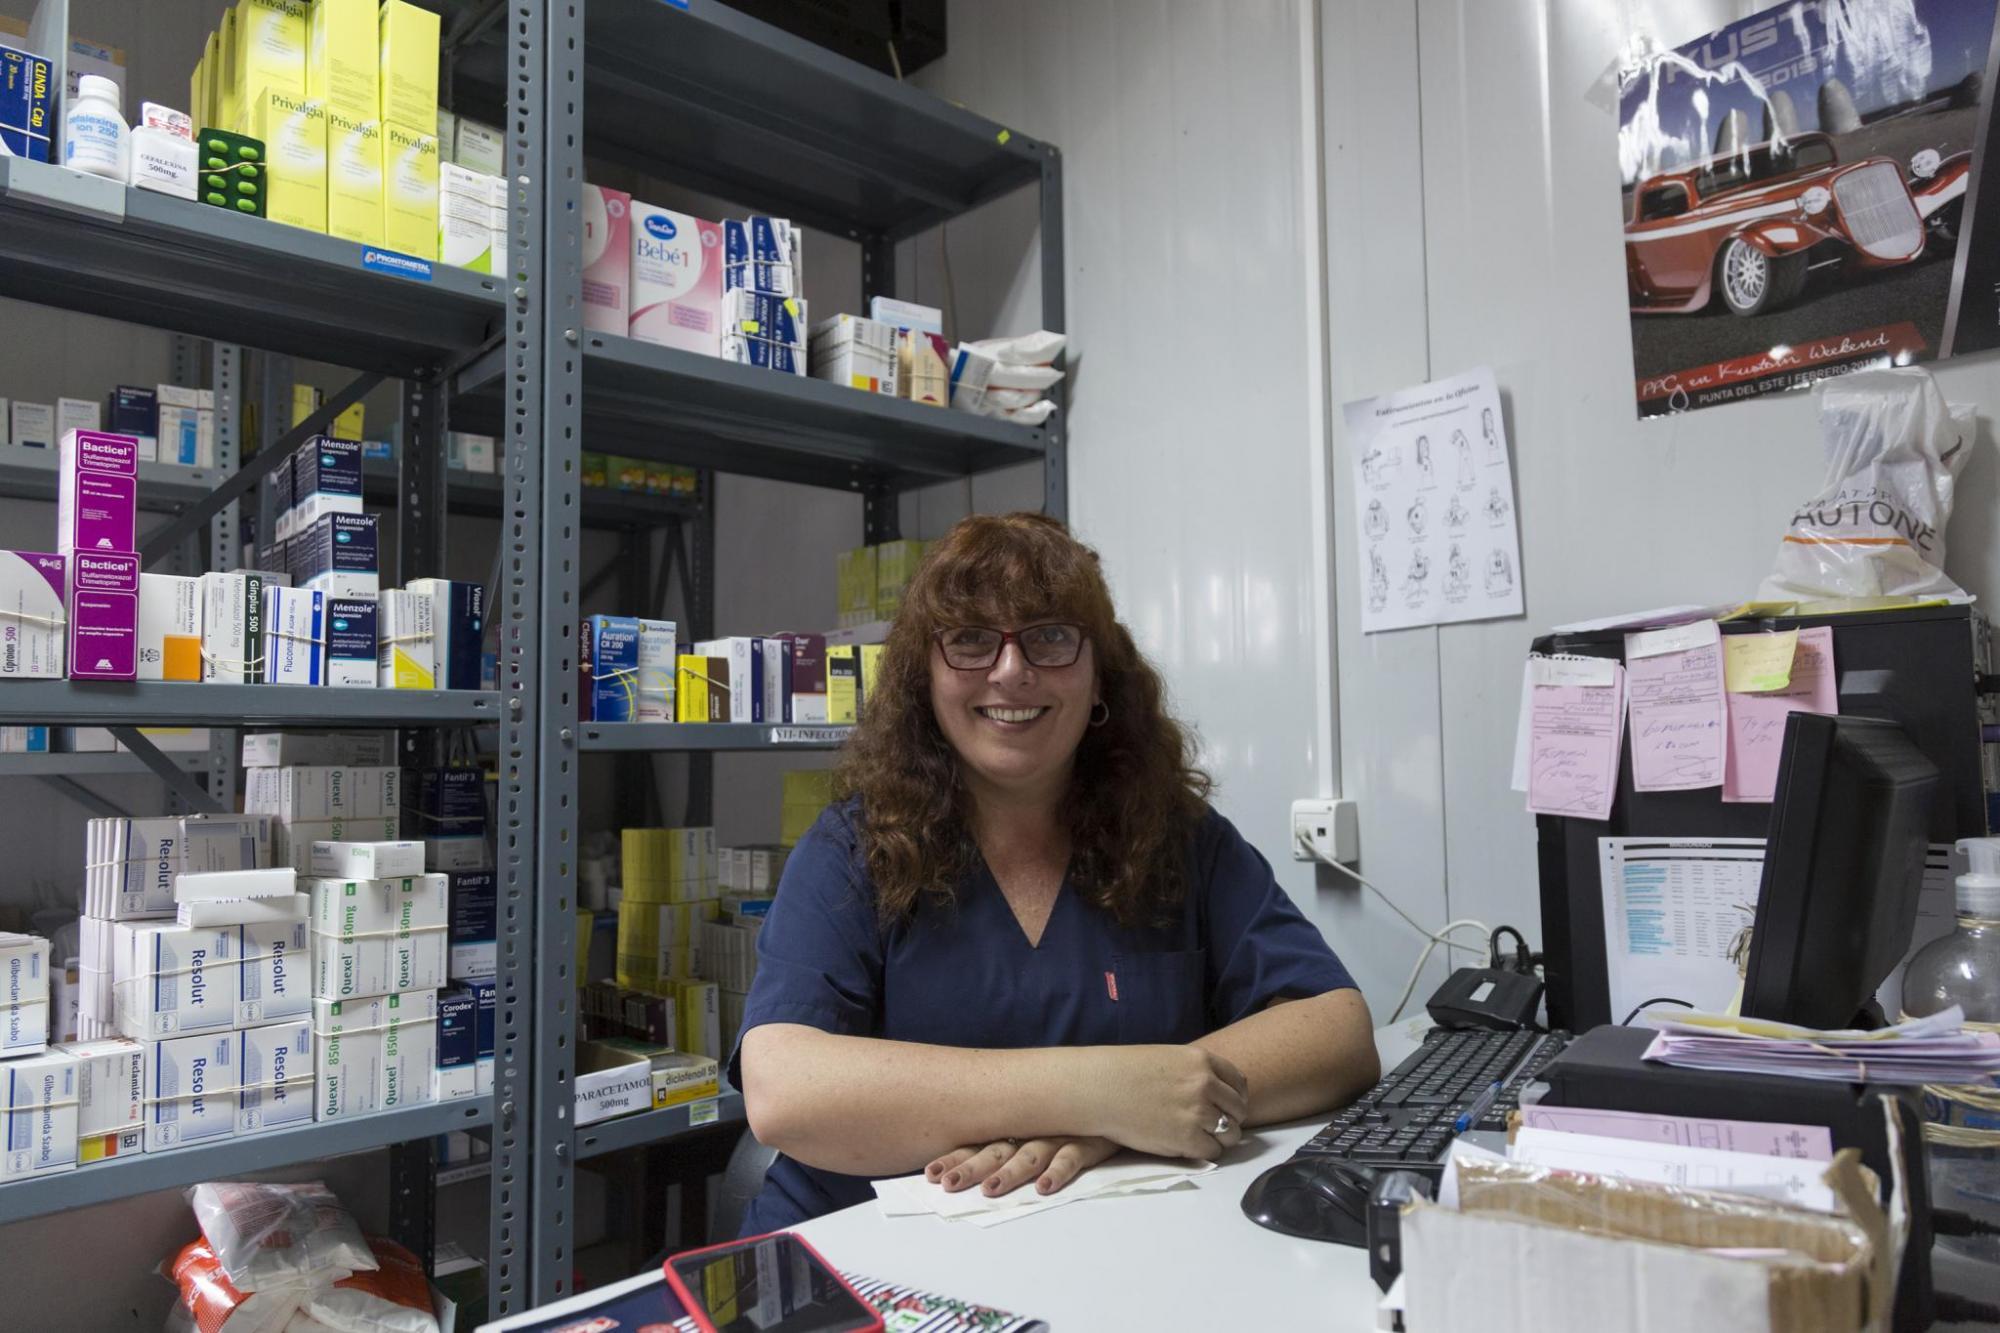 Mujer sentada delante de estantería con medicamentos